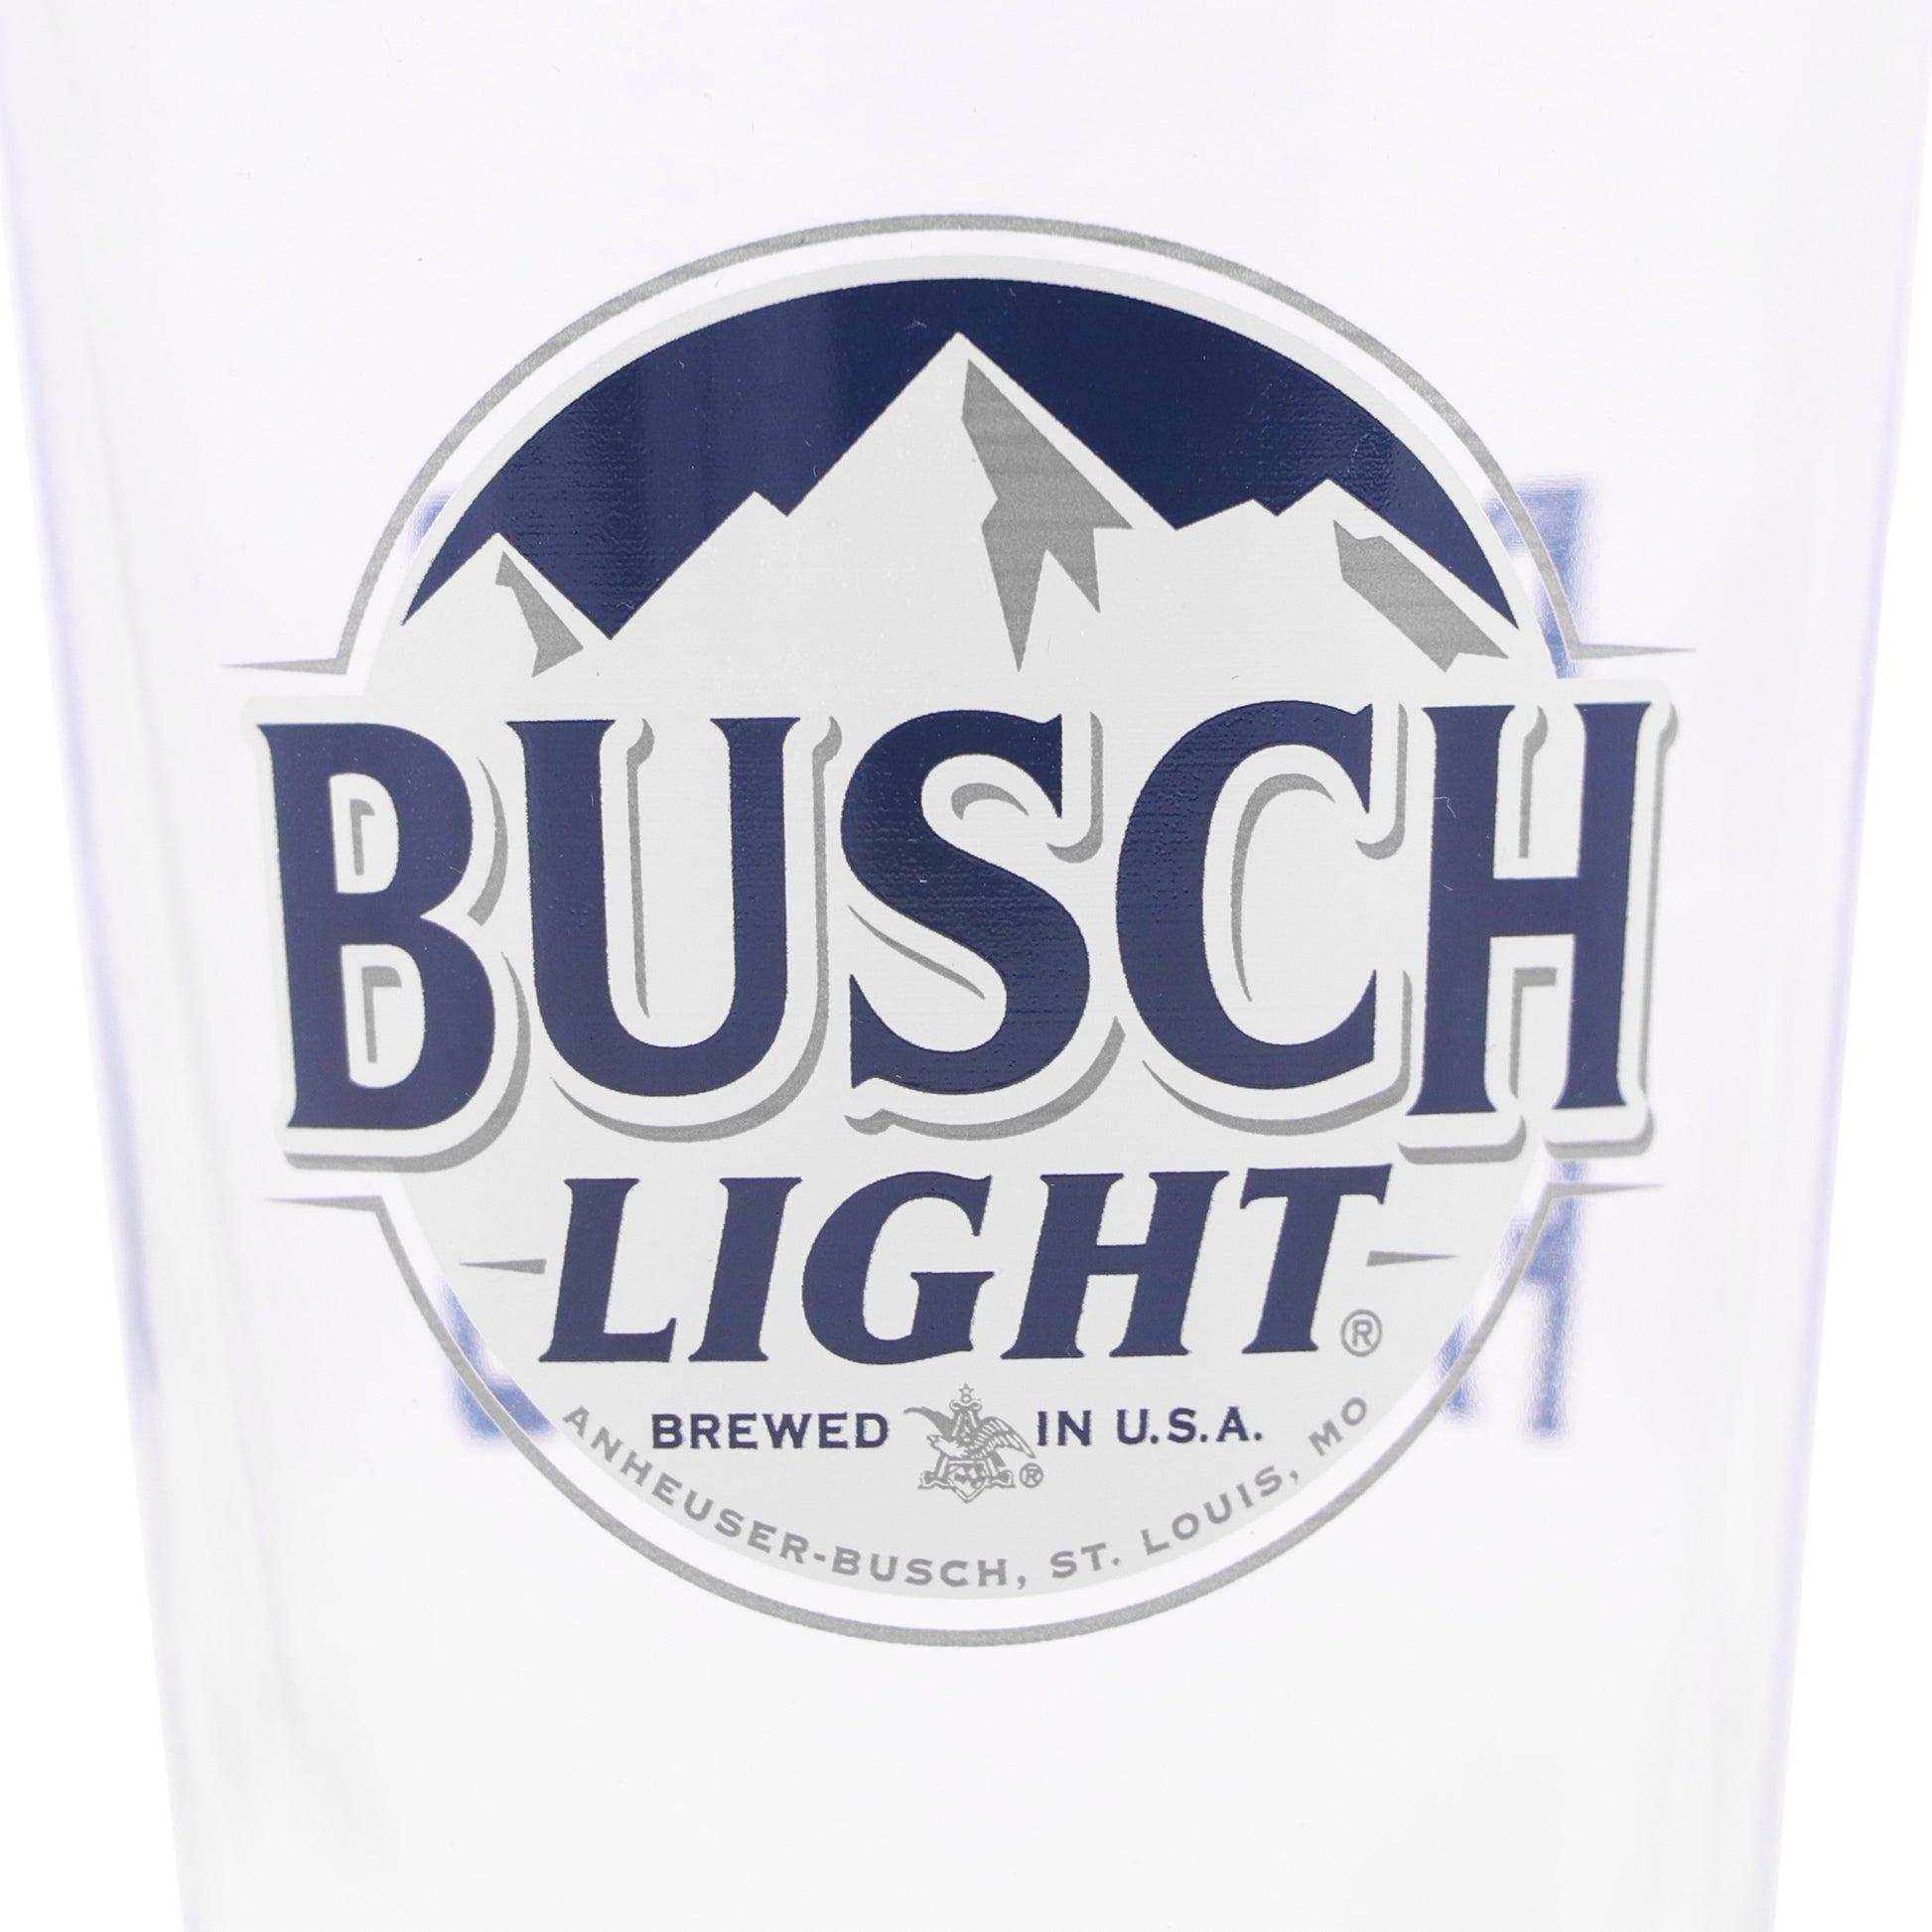 Busch Light Logo Closeup on Pint Glass